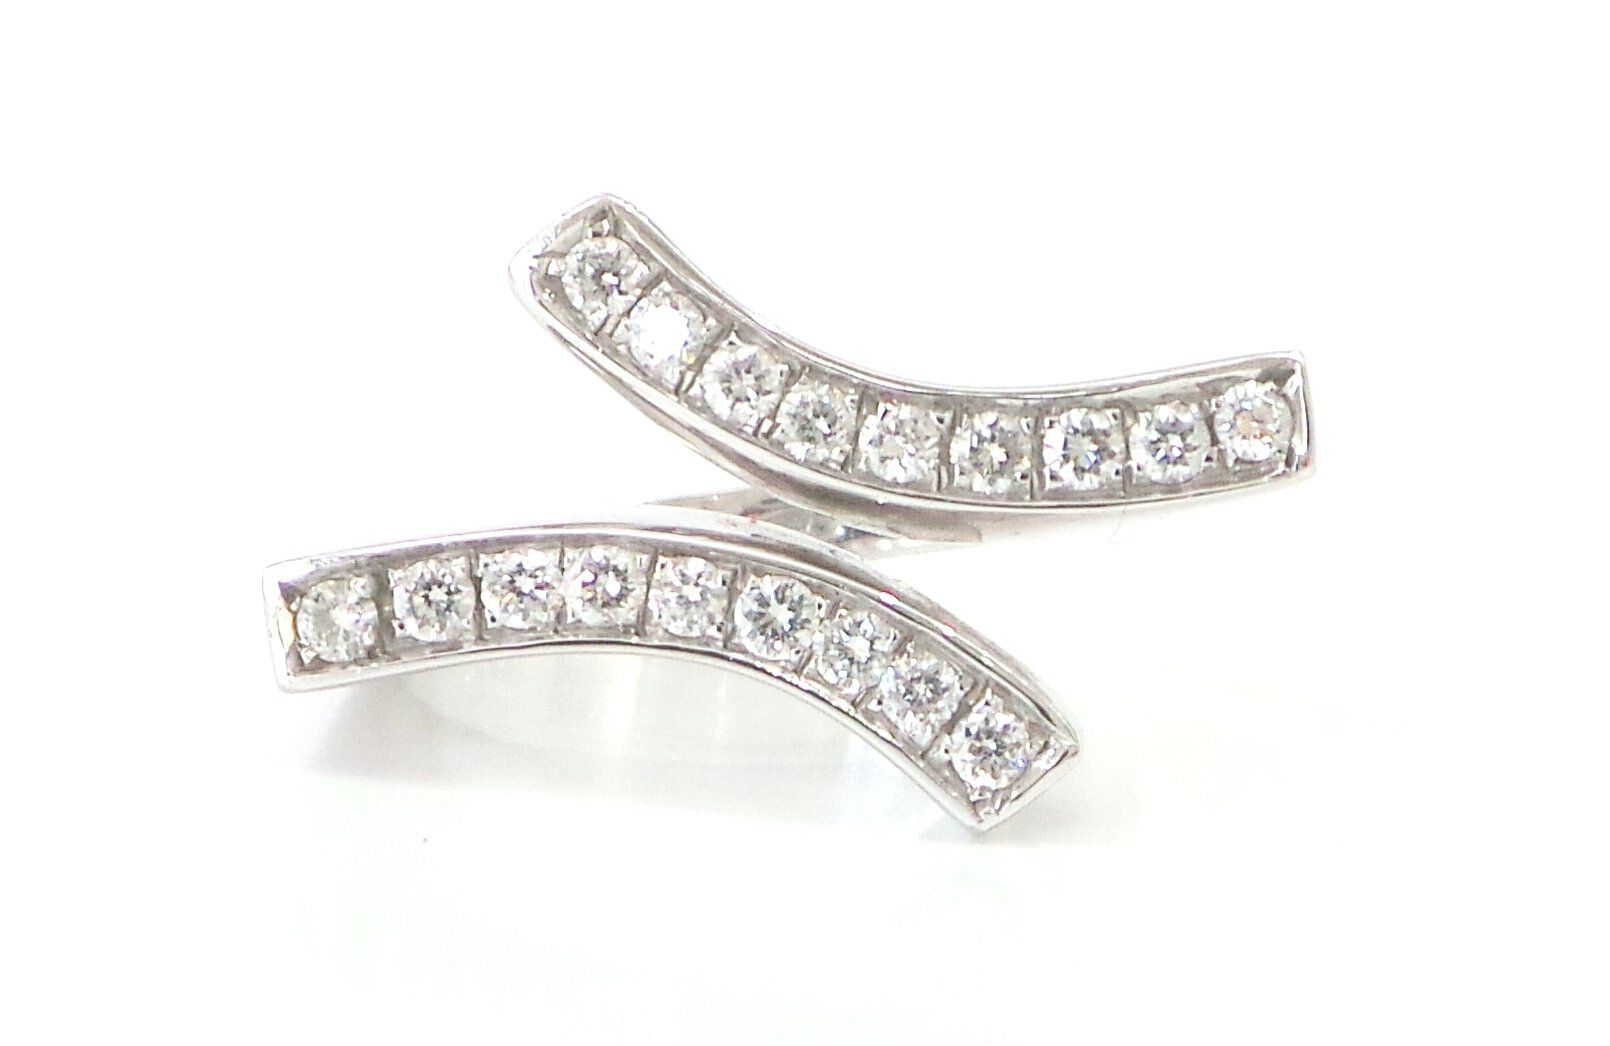 Cattelan  -anello oro bianco 750 e diamanti - mod. Berenice